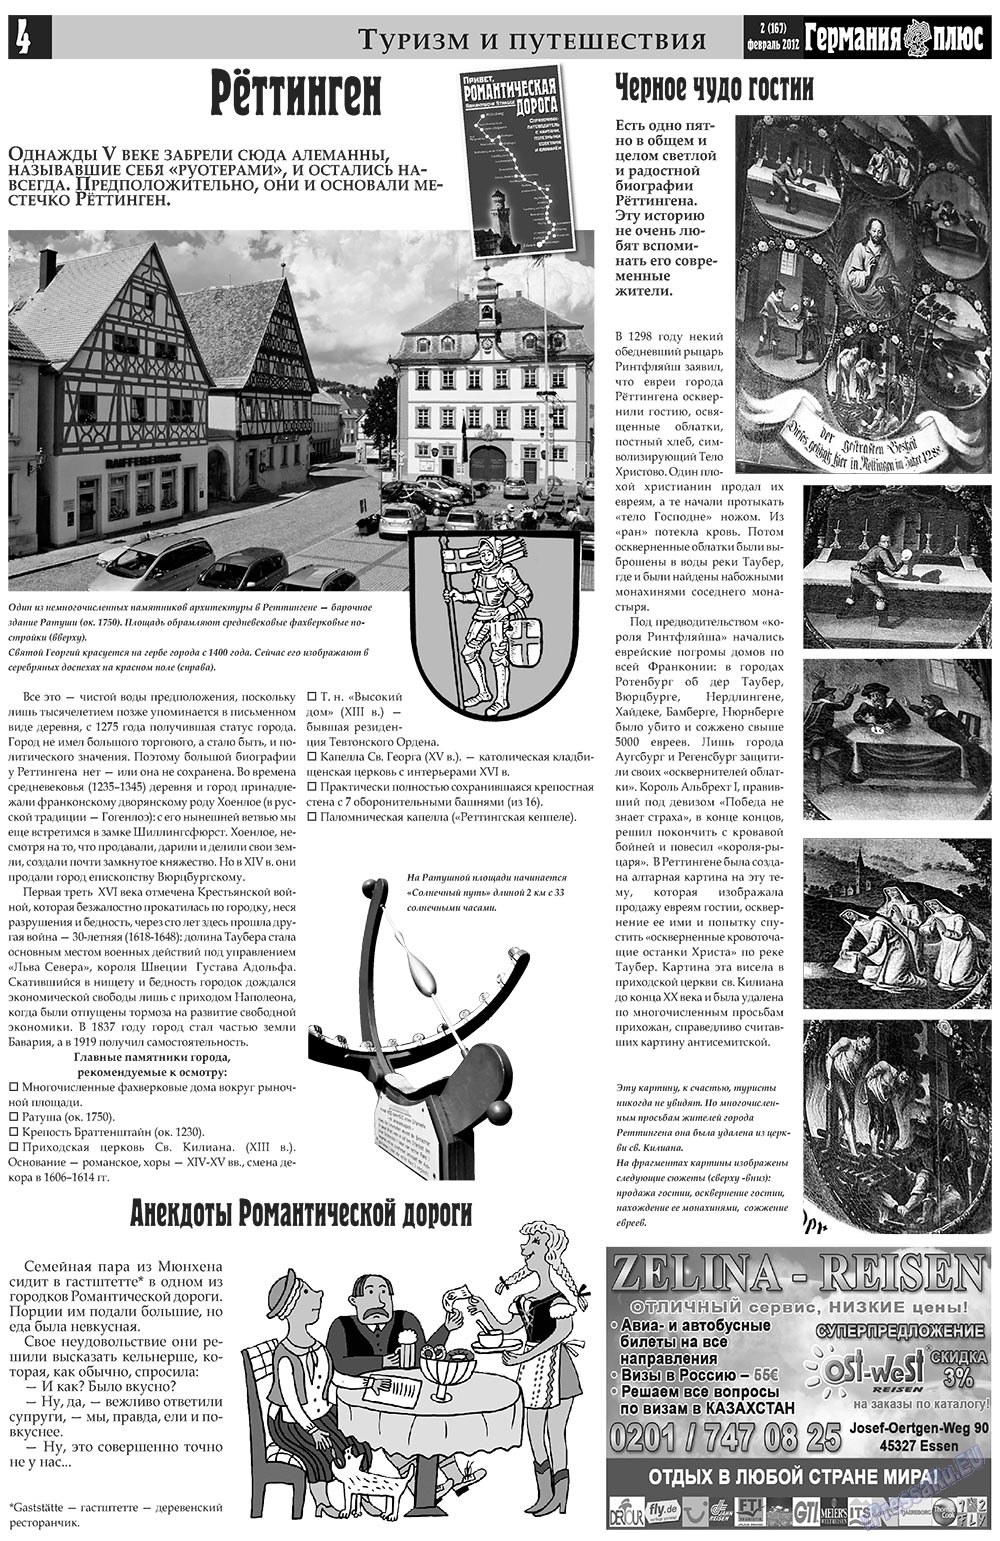 Германия плюс (газета). 2012 год, номер 2, стр. 4